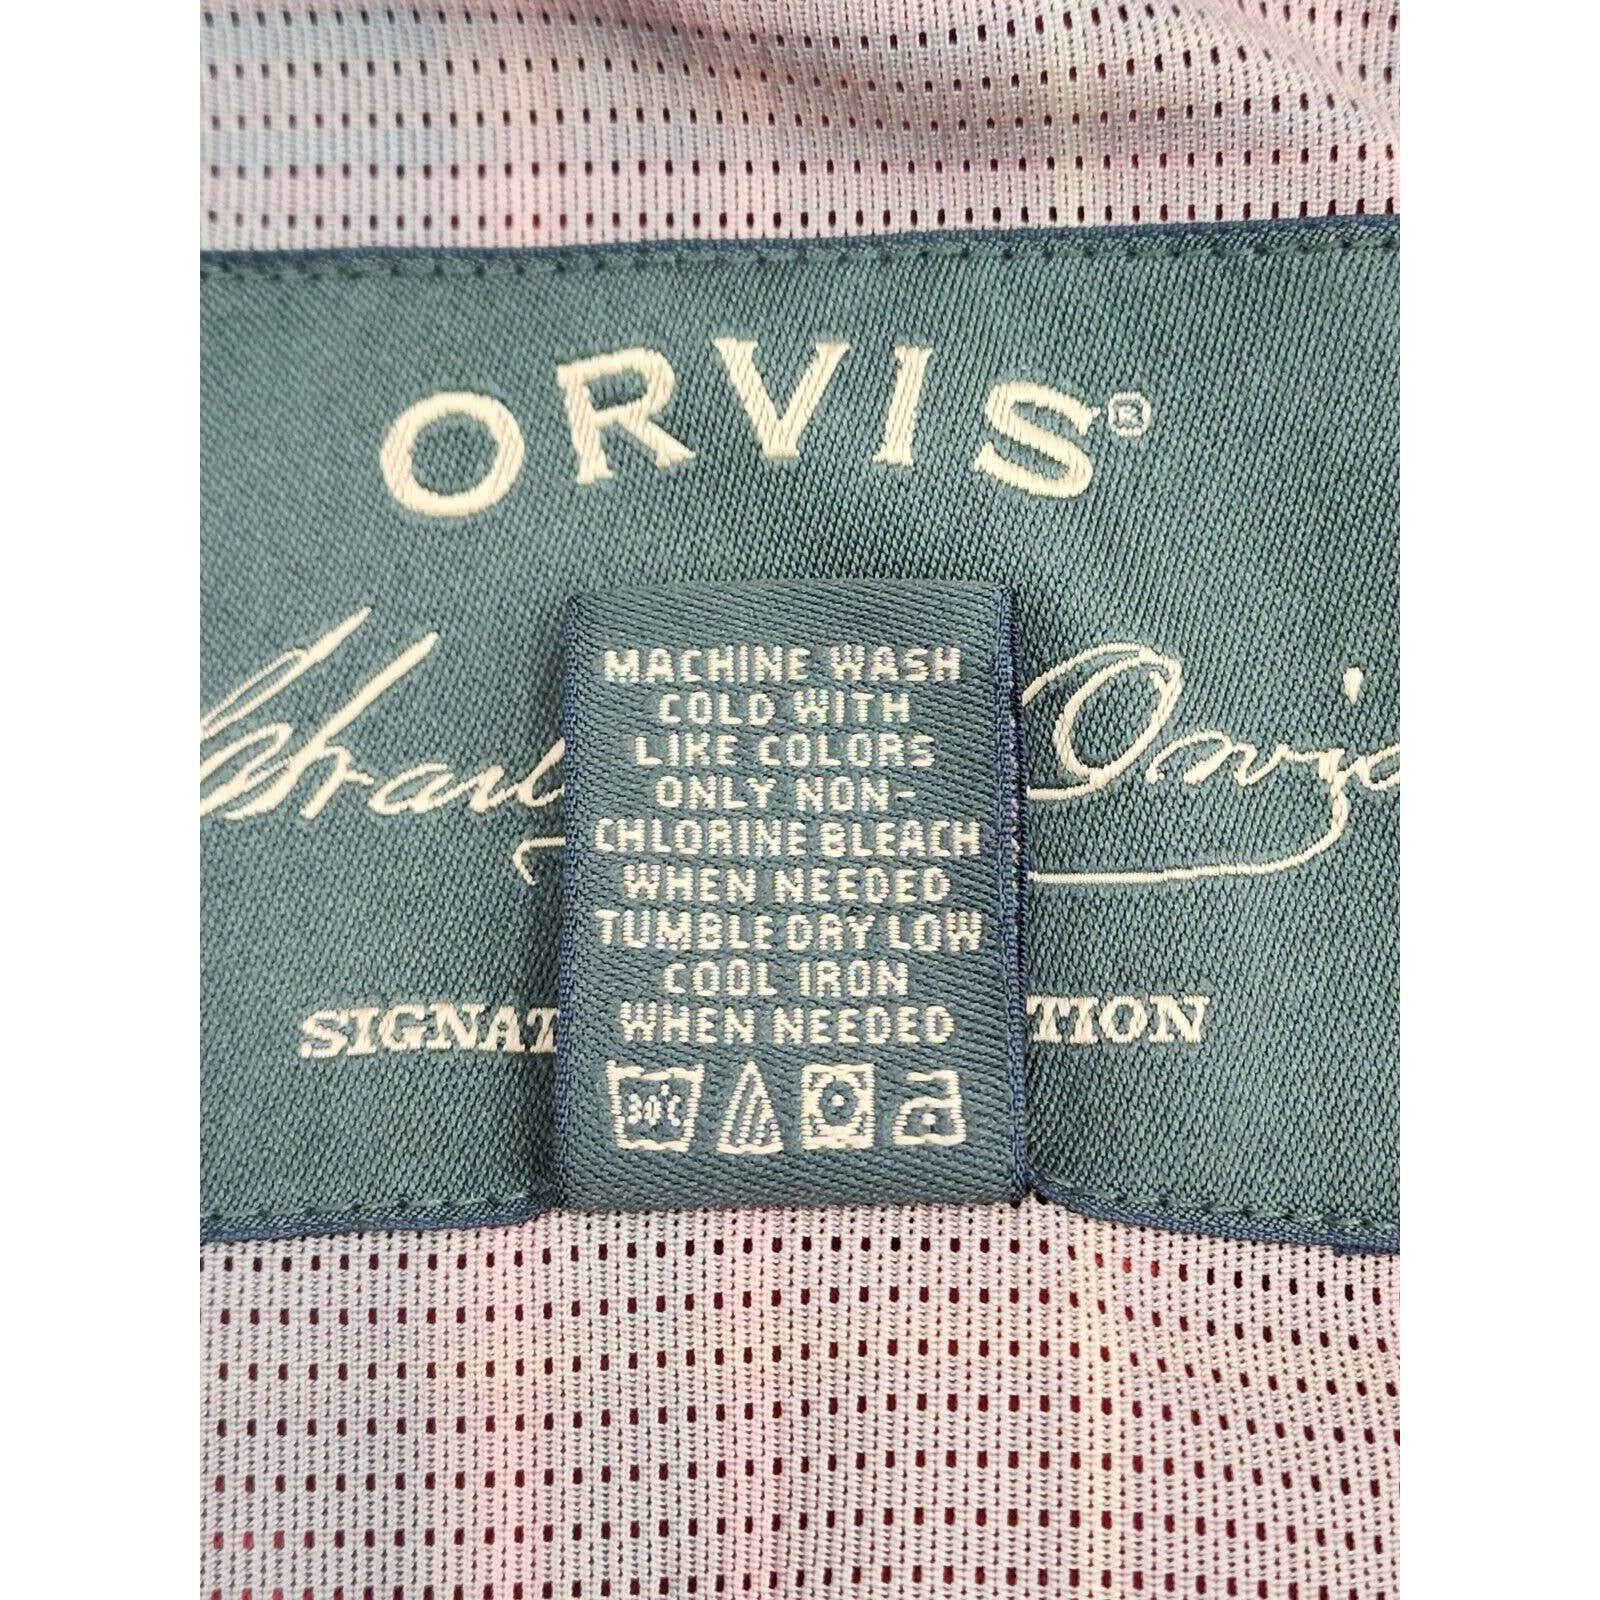 Orvis Orvis Signature Series Jacket Soft Faux Suede Burnt Orange Size US M / EU 48-50 / 2 - 15 Preview